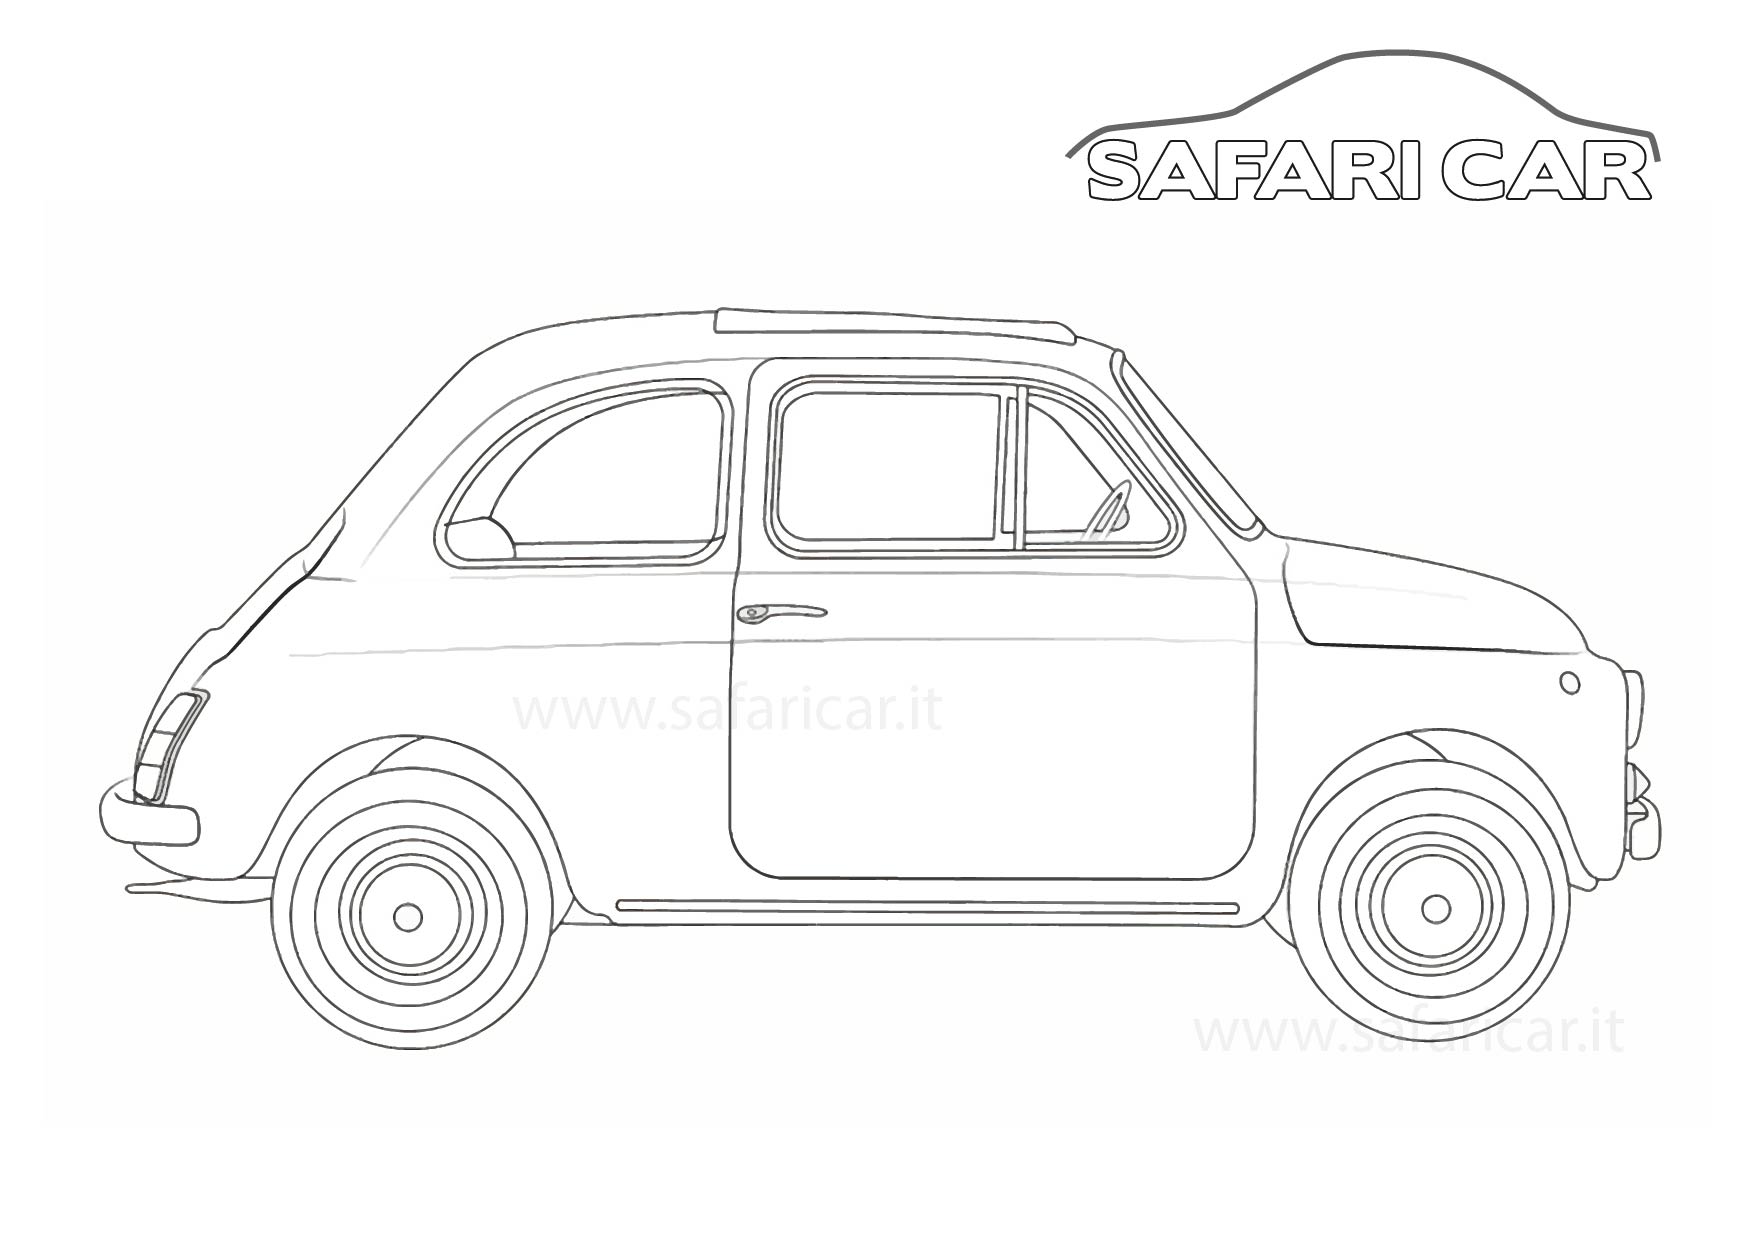 500epocasafaricar 01